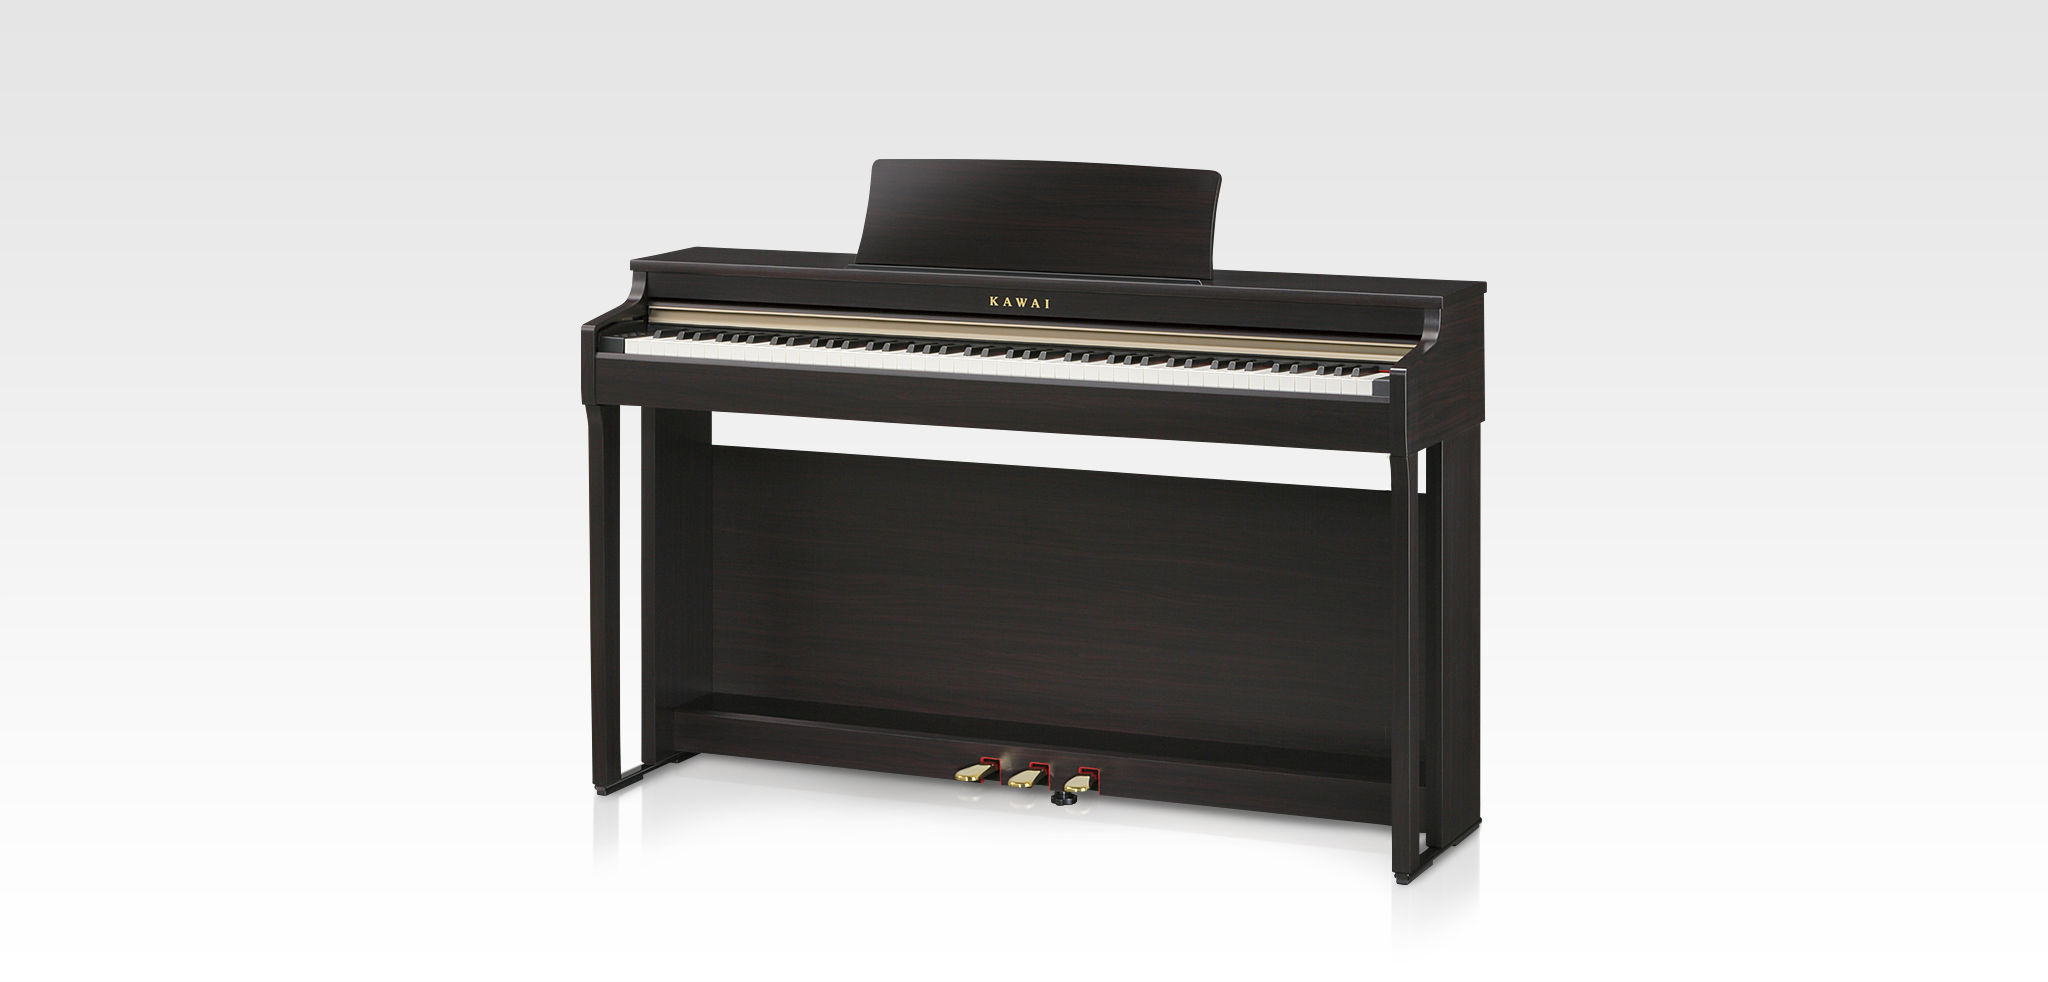 Kawai CN27｜Digital Pianos｜Products｜Kawai Musical Instruments 